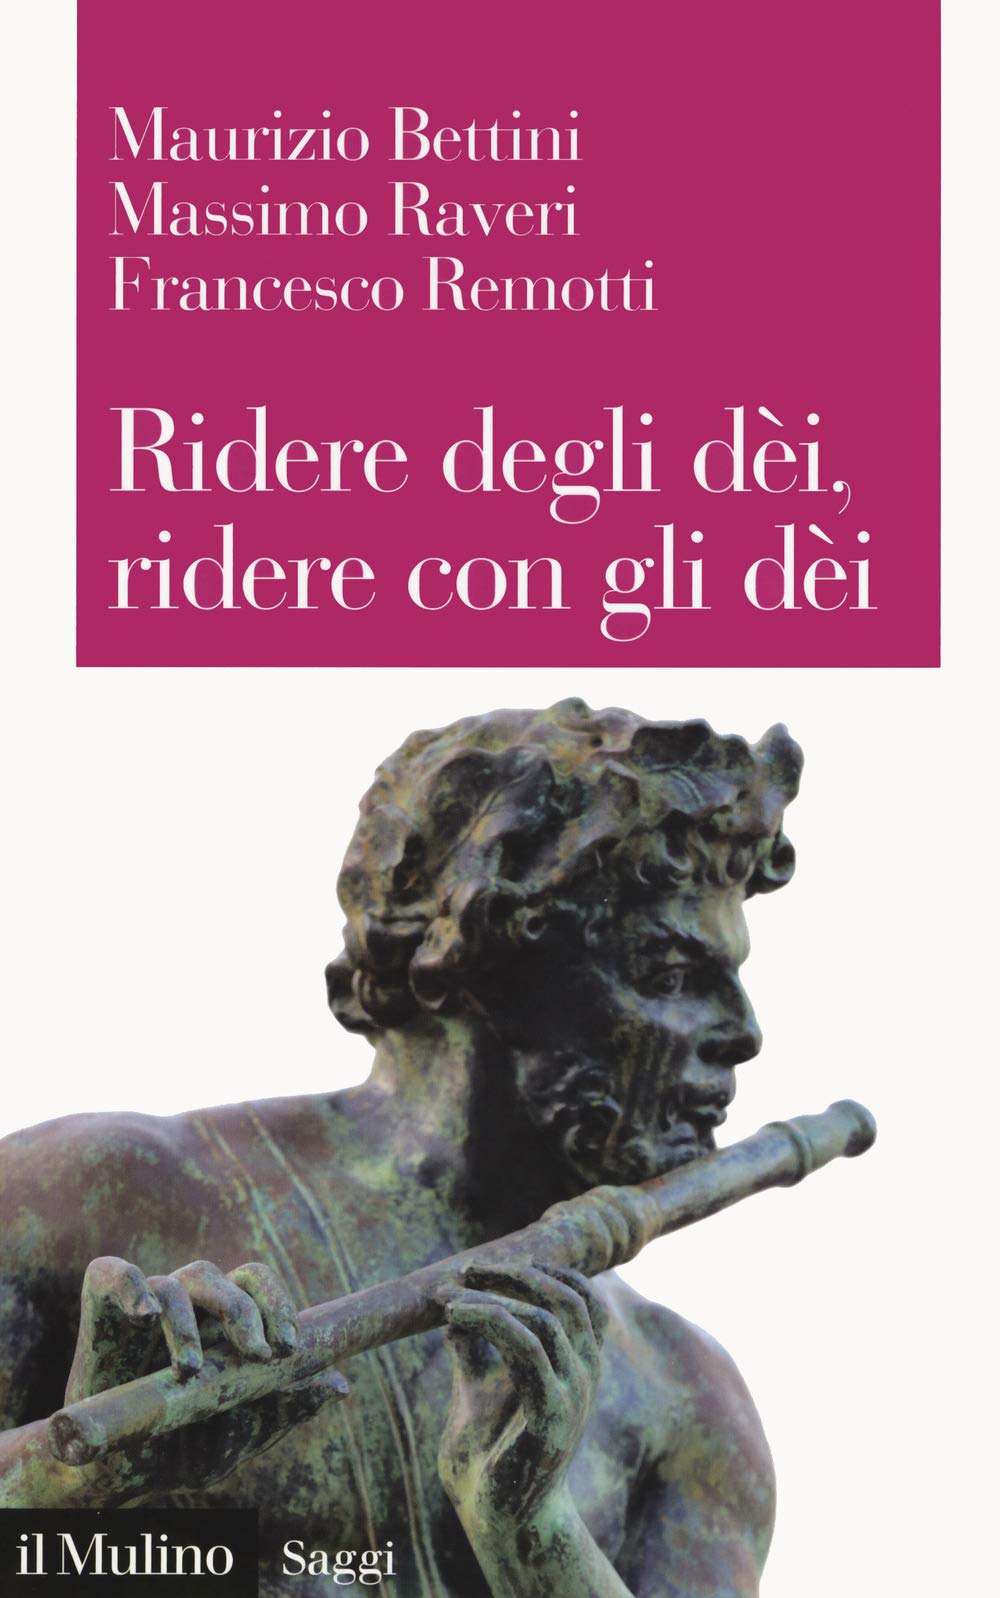 Recensione di Ridere Degli Dèi Ridere Con Gli Dèi – M. Bettini, M. Raveri, F. Remotti